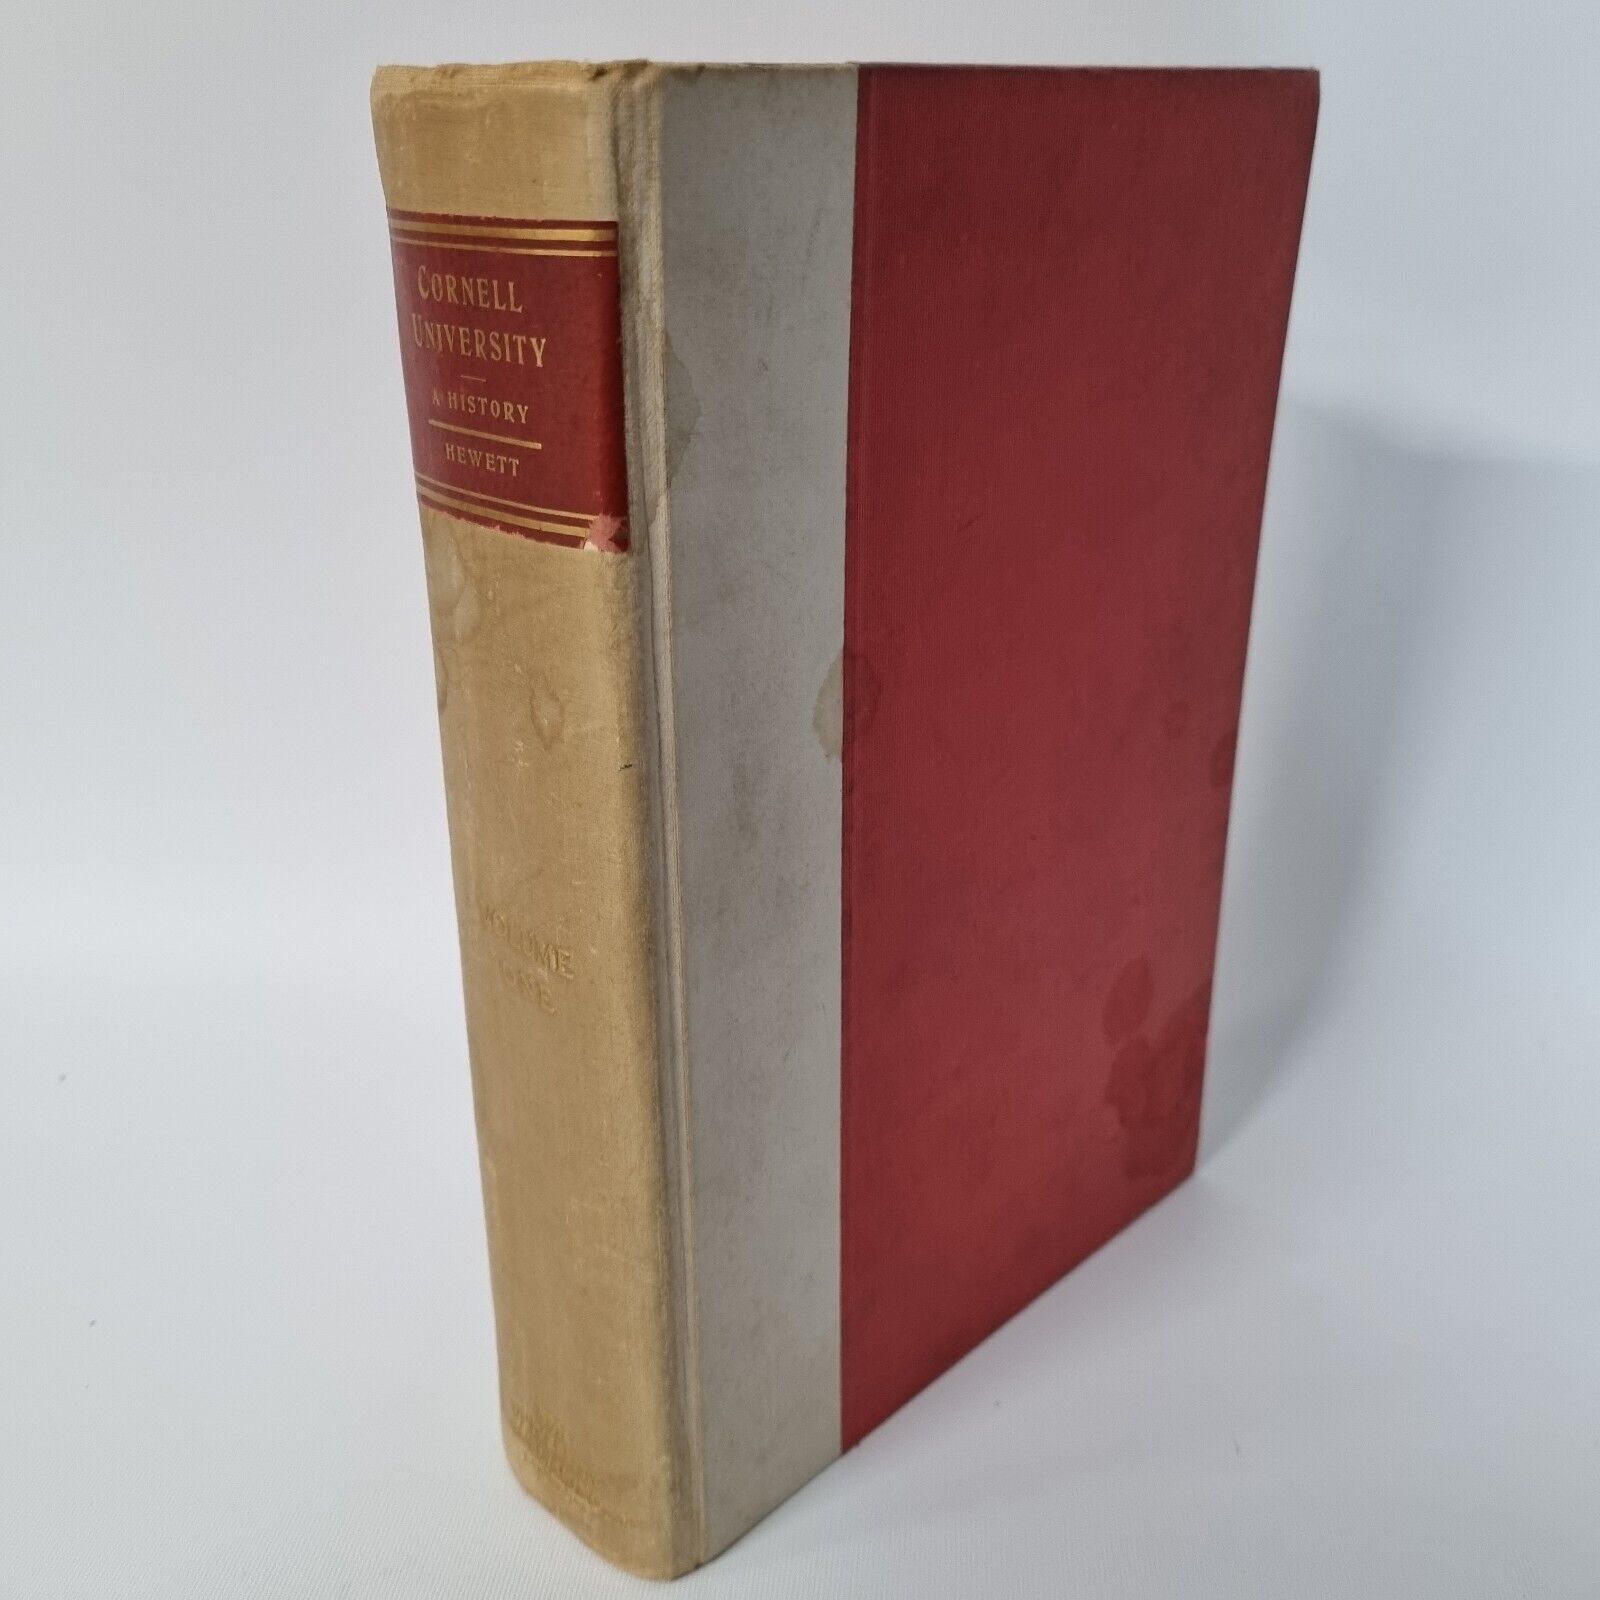 Cornell University, a History, by Waterman Thomas Hewett Volume 1 1905